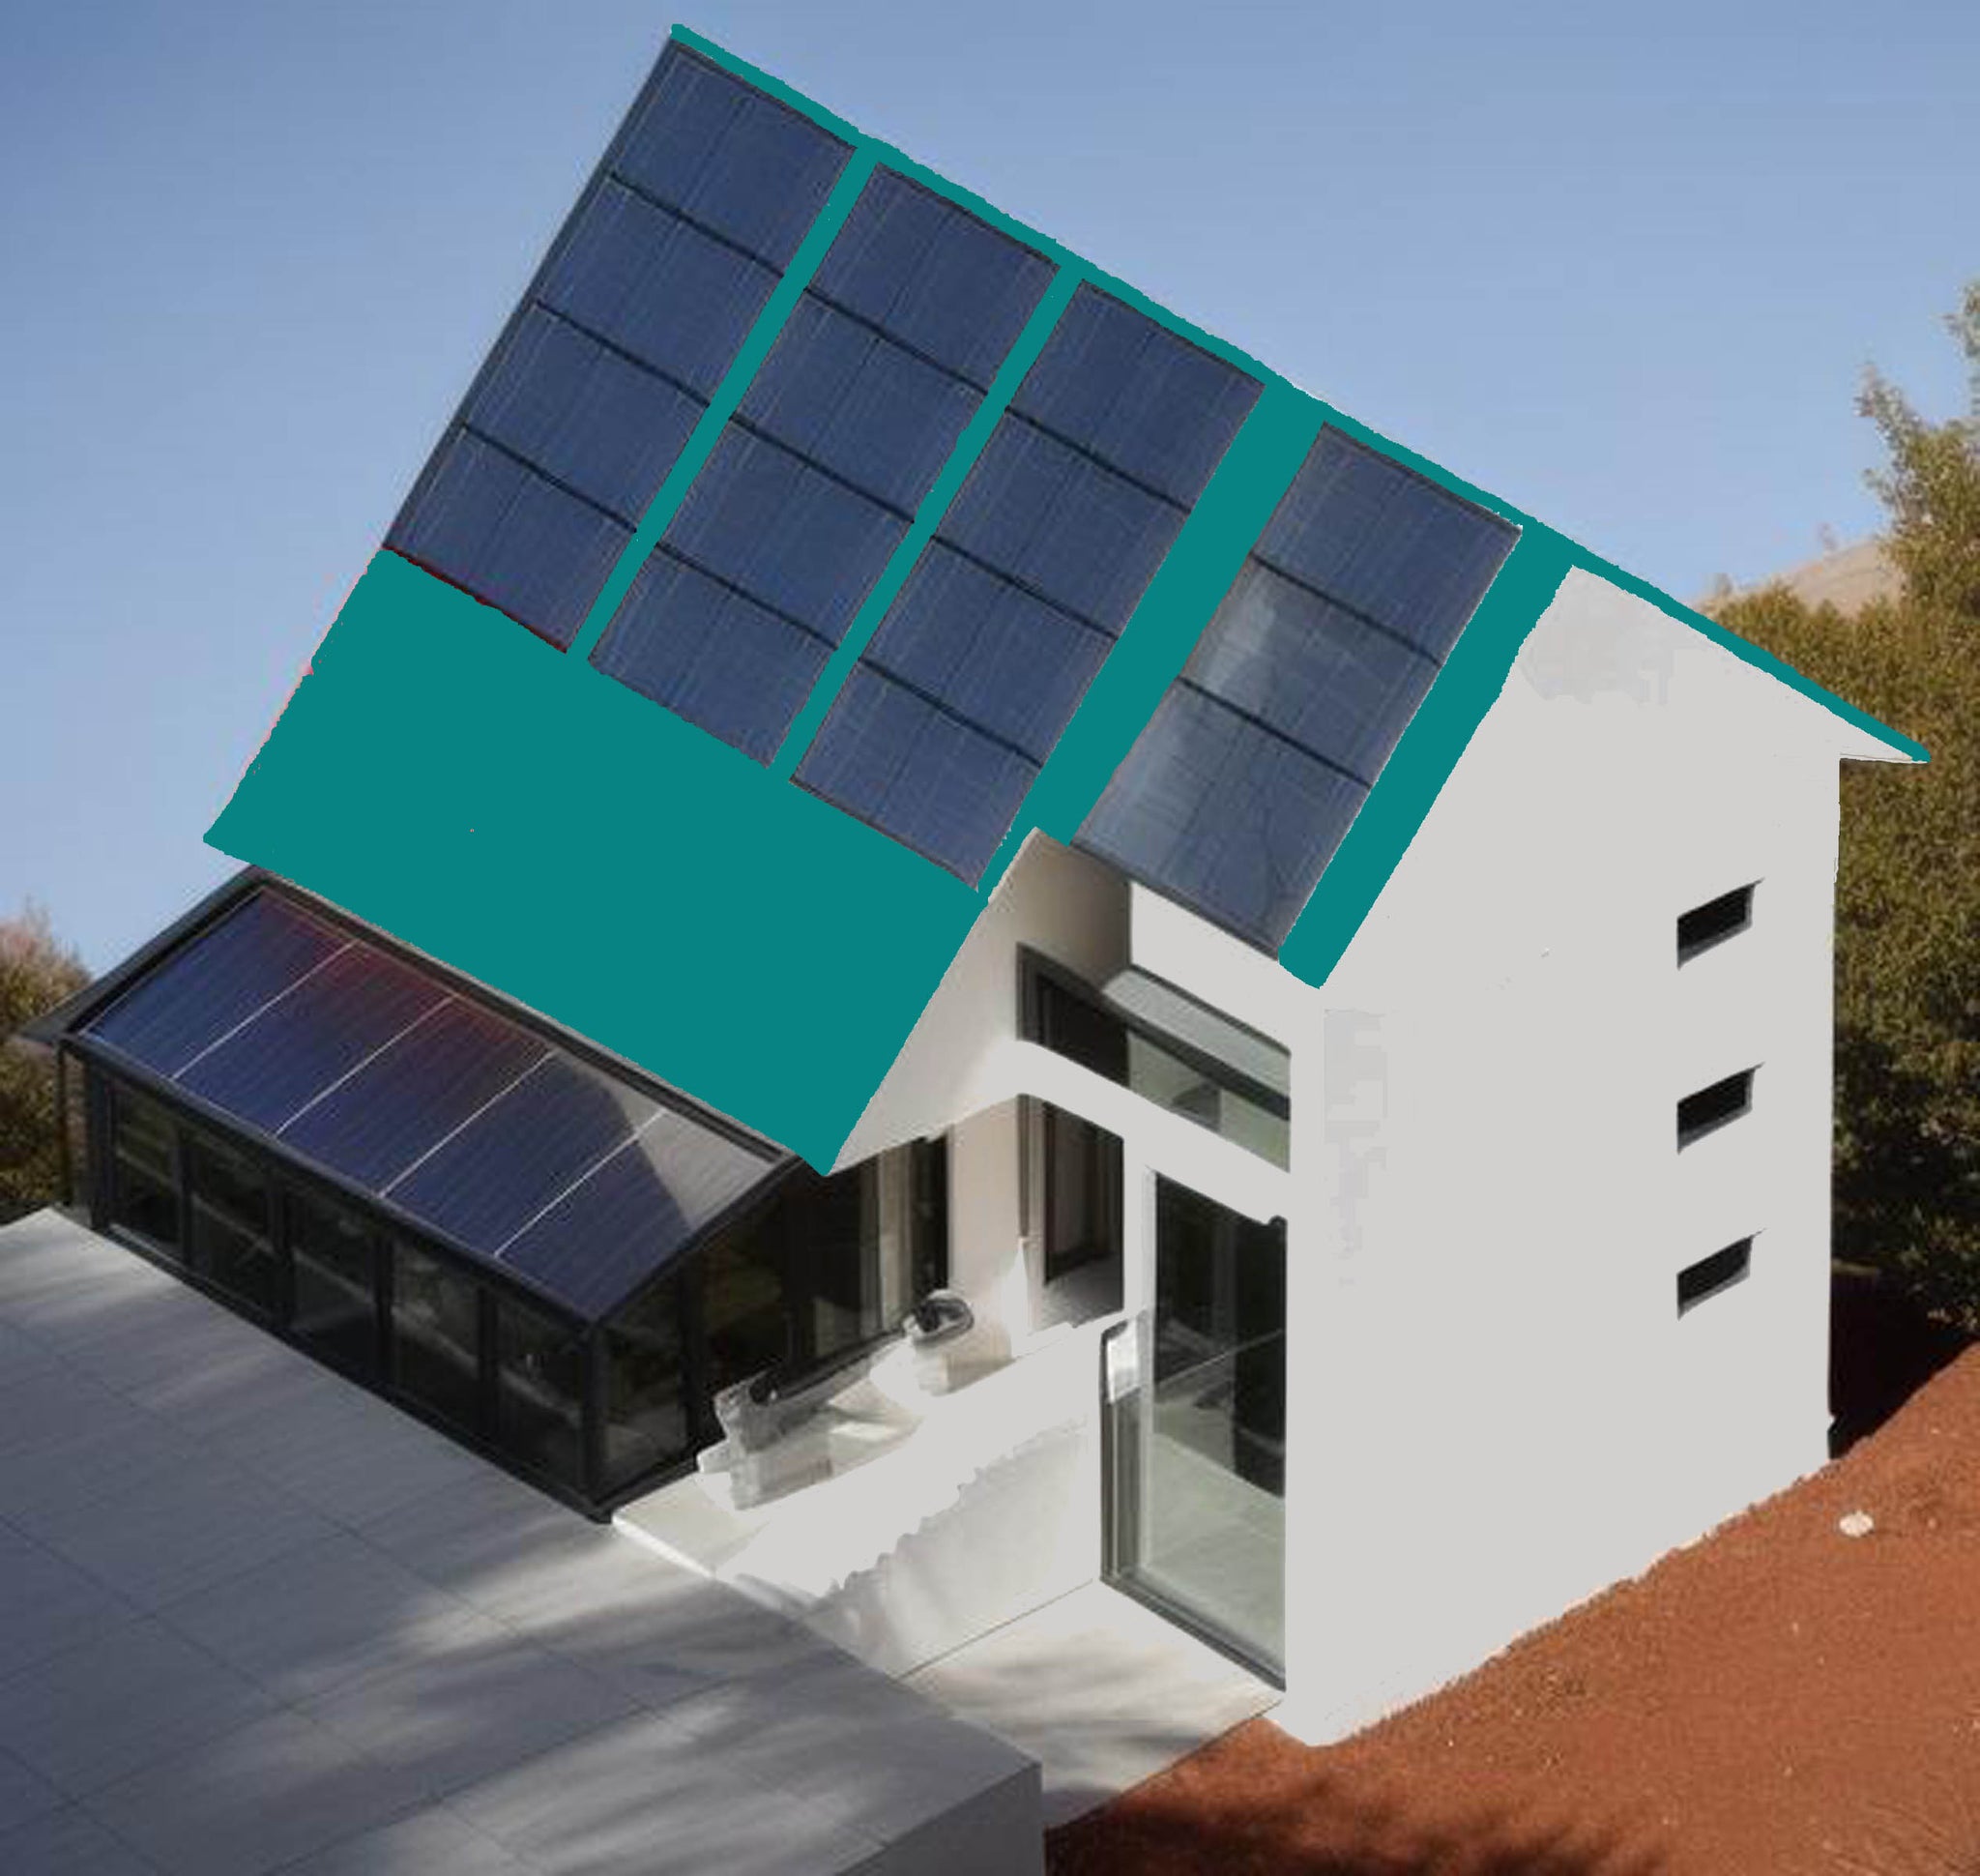 05 Solar Hybrid Home Plans - Colour Scheme 2